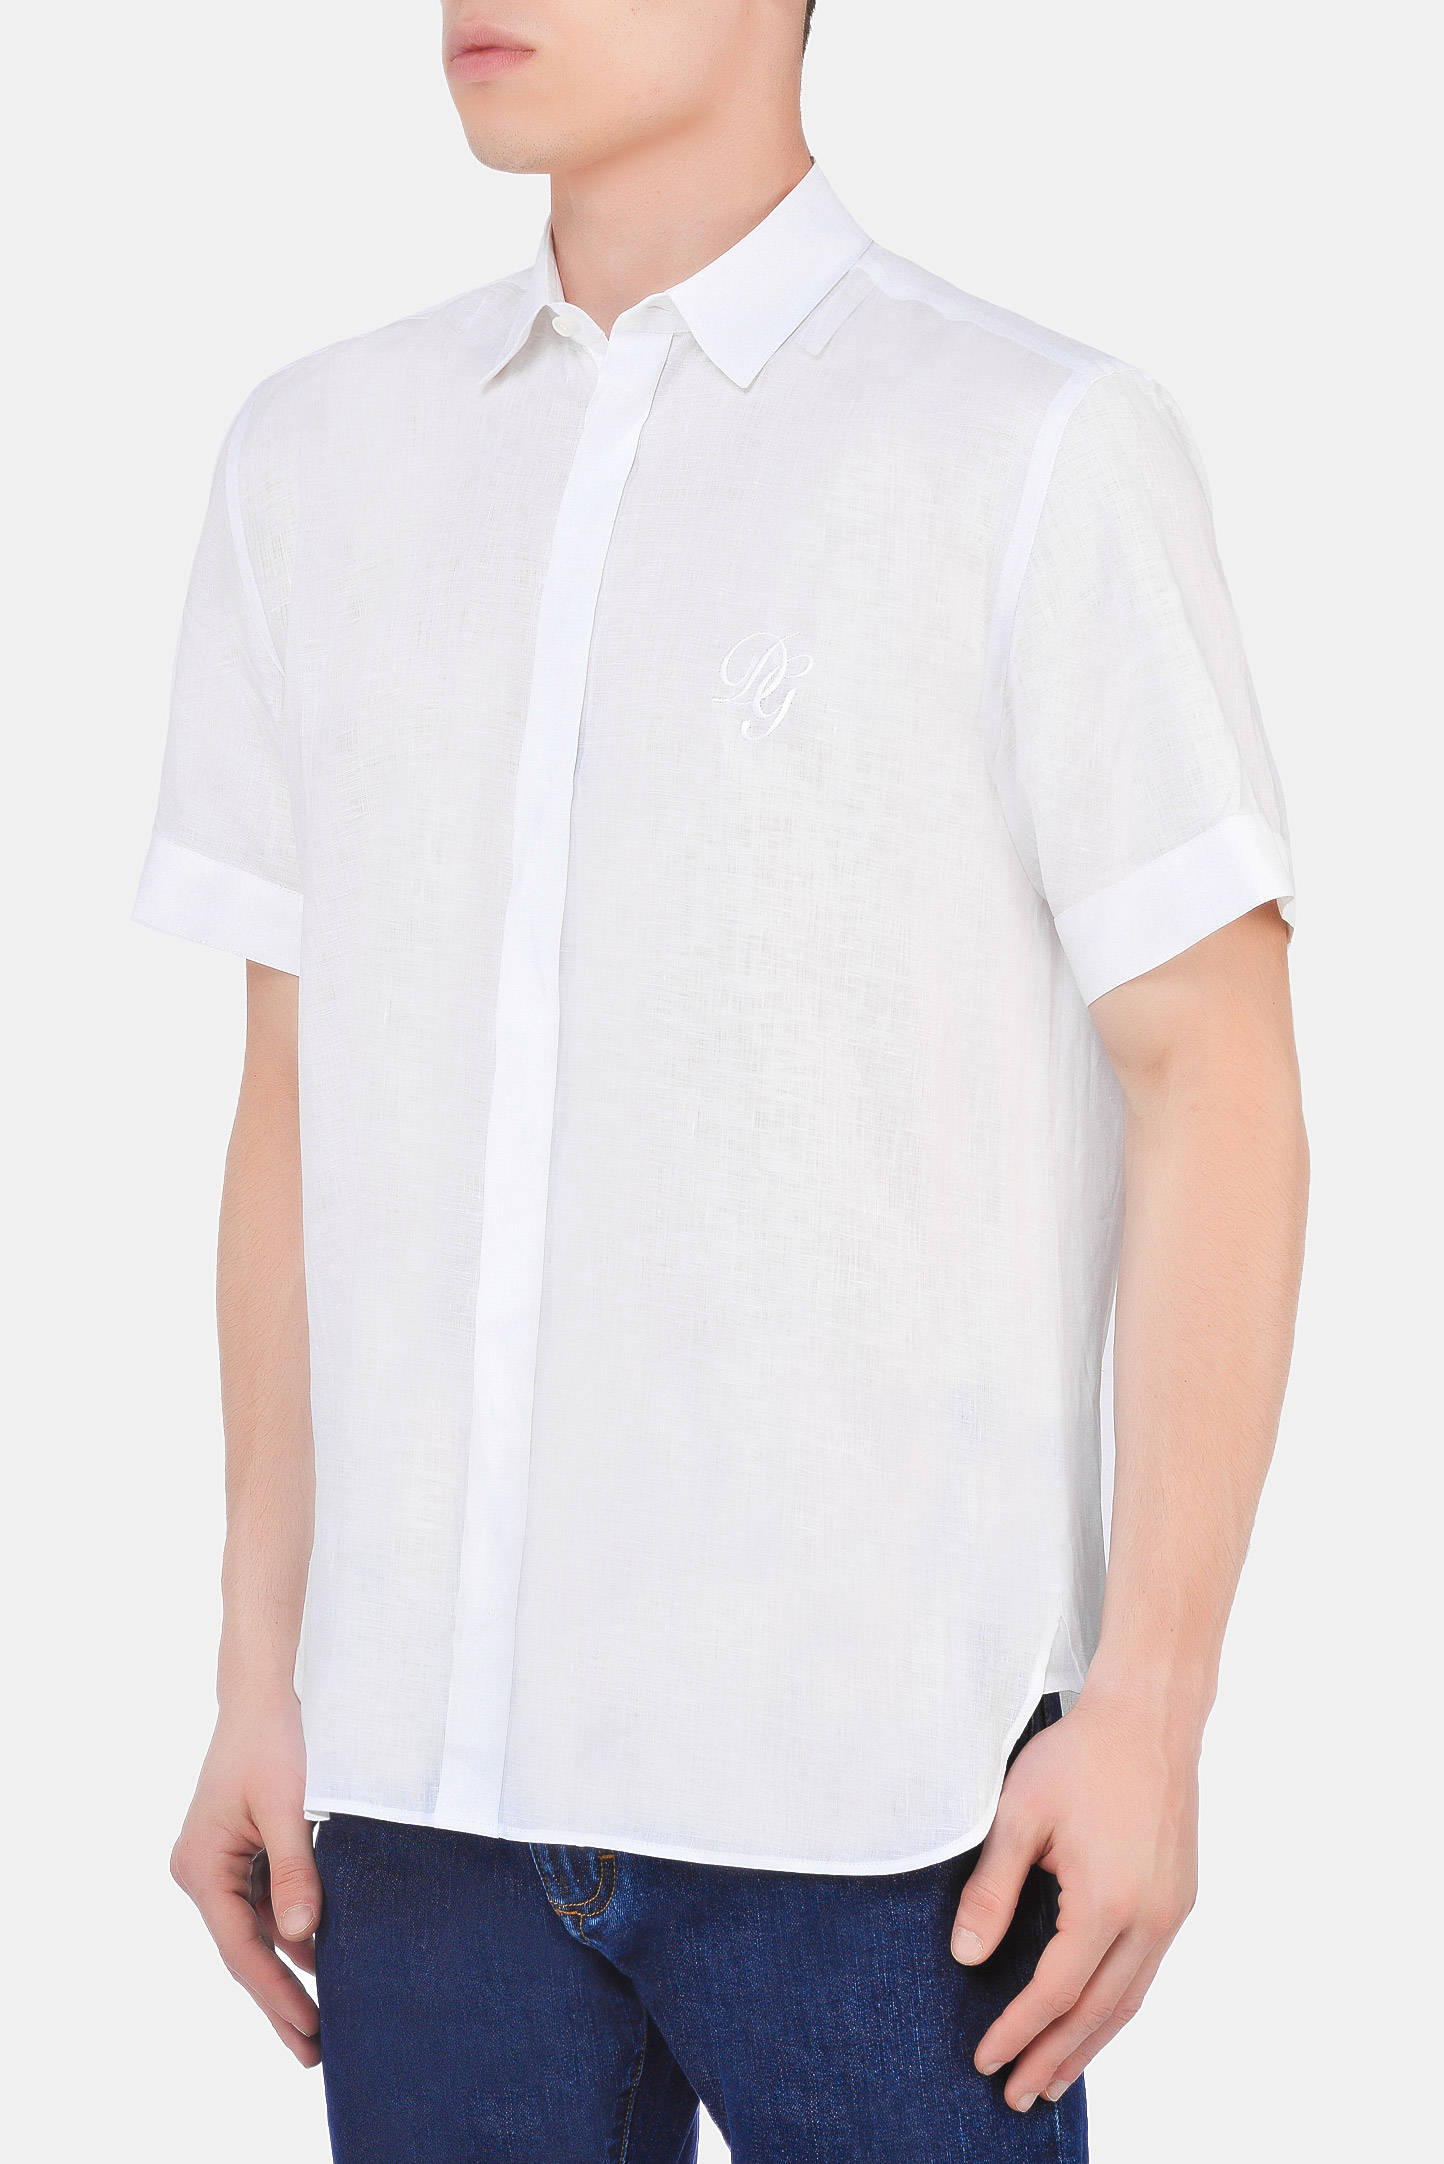 Рубашка DOLCE & GABBANA G5EX4Z FU4IK, цвет: Белый, Мужской